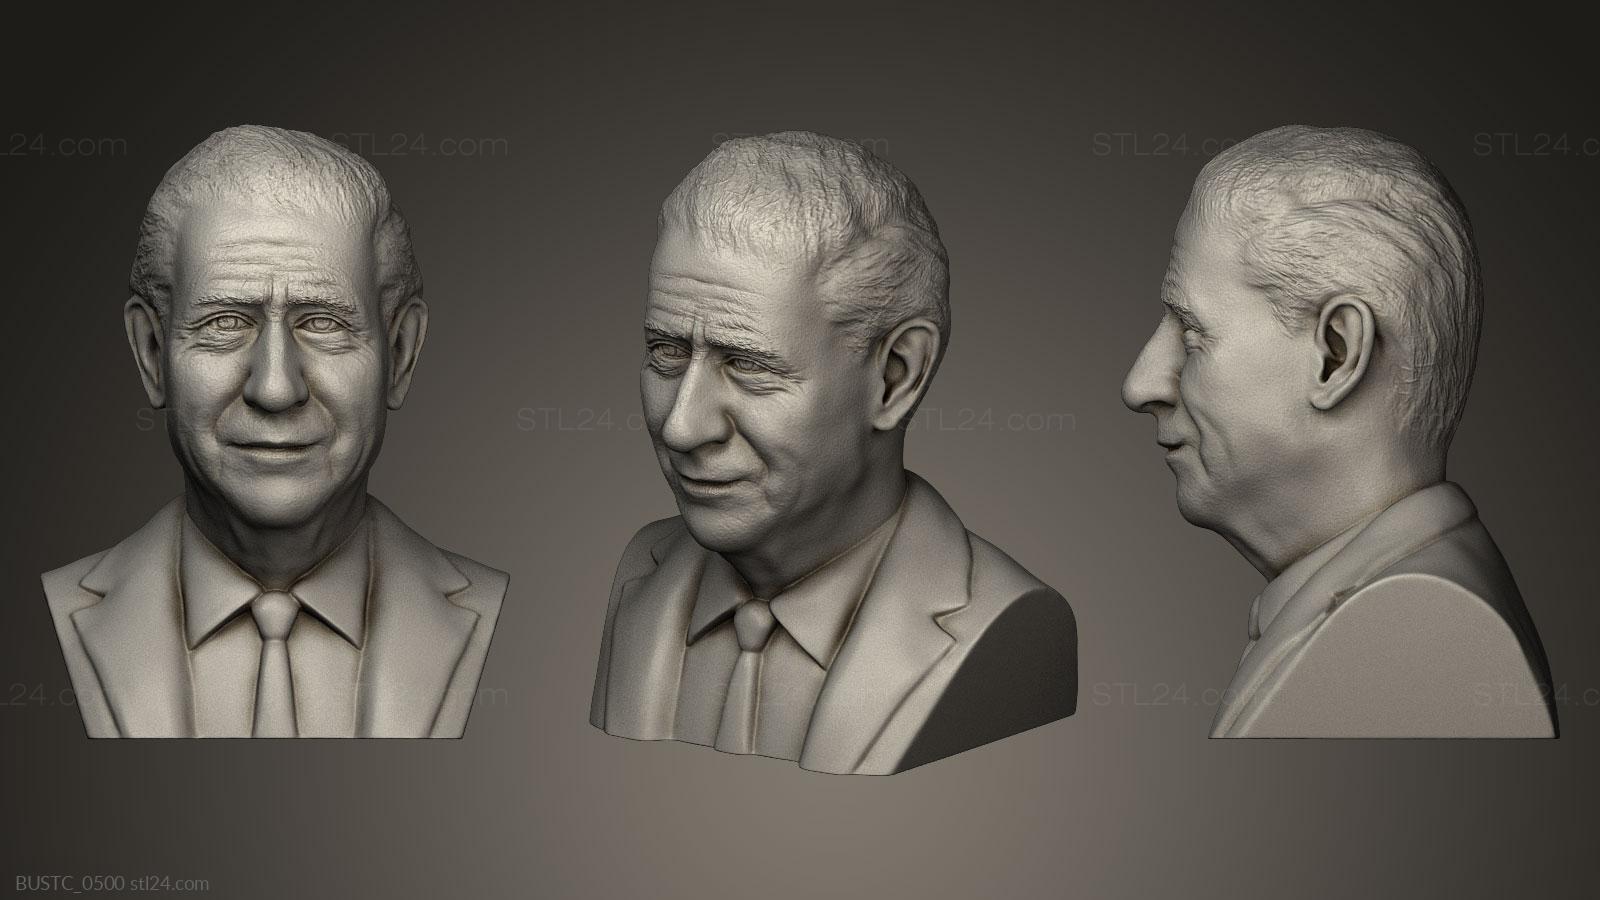 Бюсты и барельефы известных личностей (Принц Чарльз, BUSTC_0500) 3D модель для ЧПУ станка